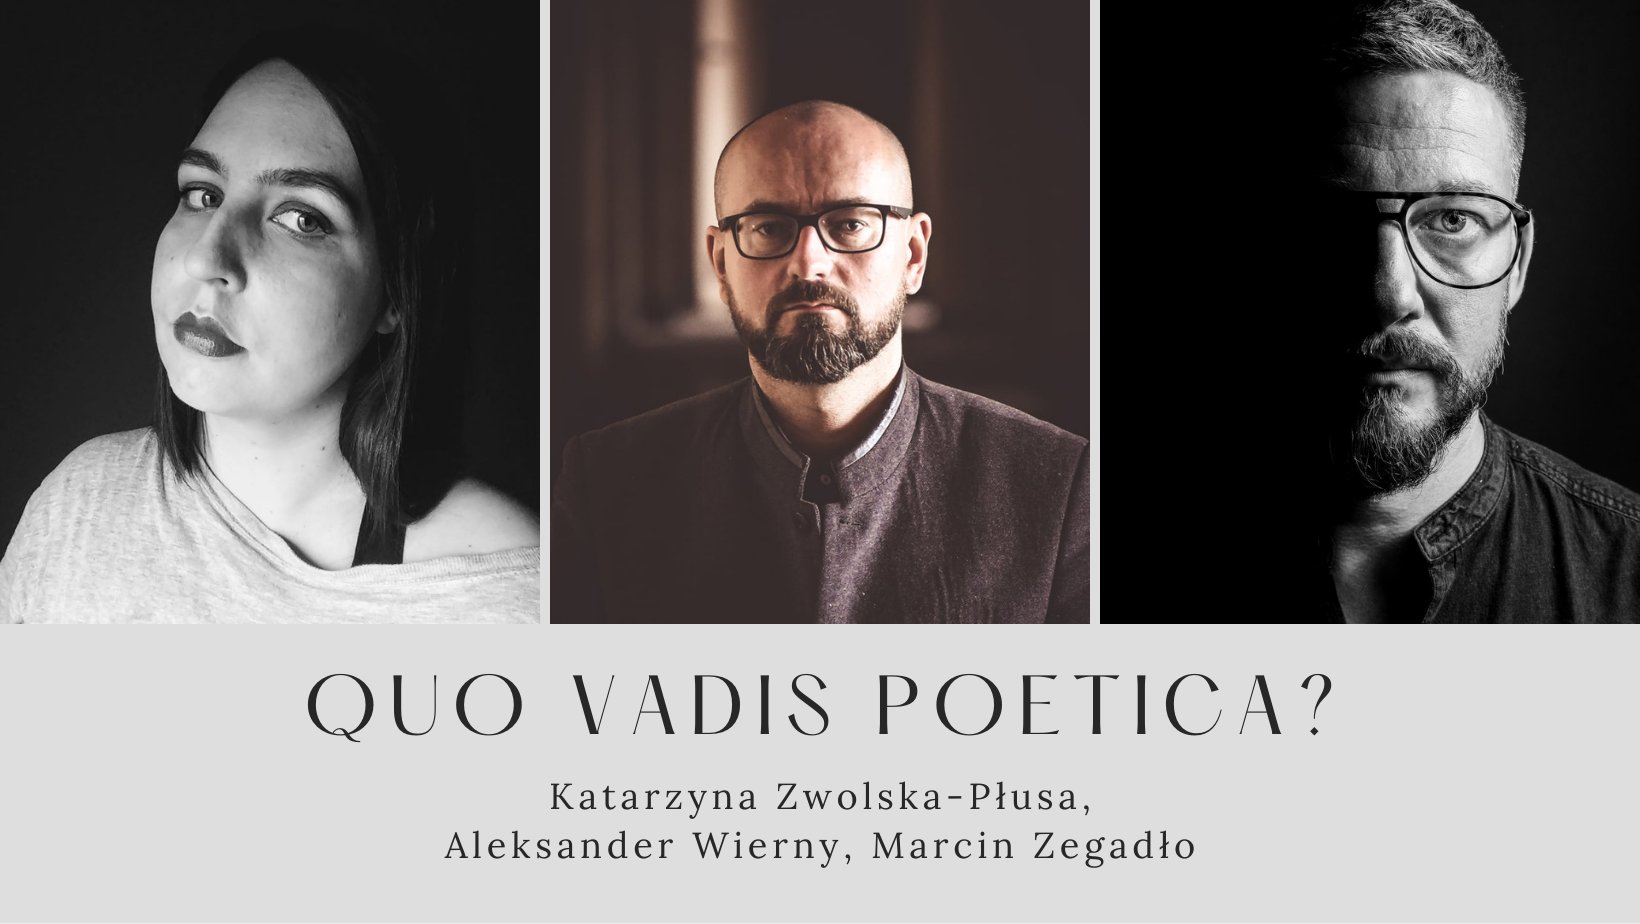 "Quo vadis poetica?" Dyskusja o kondycji współczesnej poezji w częstochowskiej Bibliotece Publicznej 6